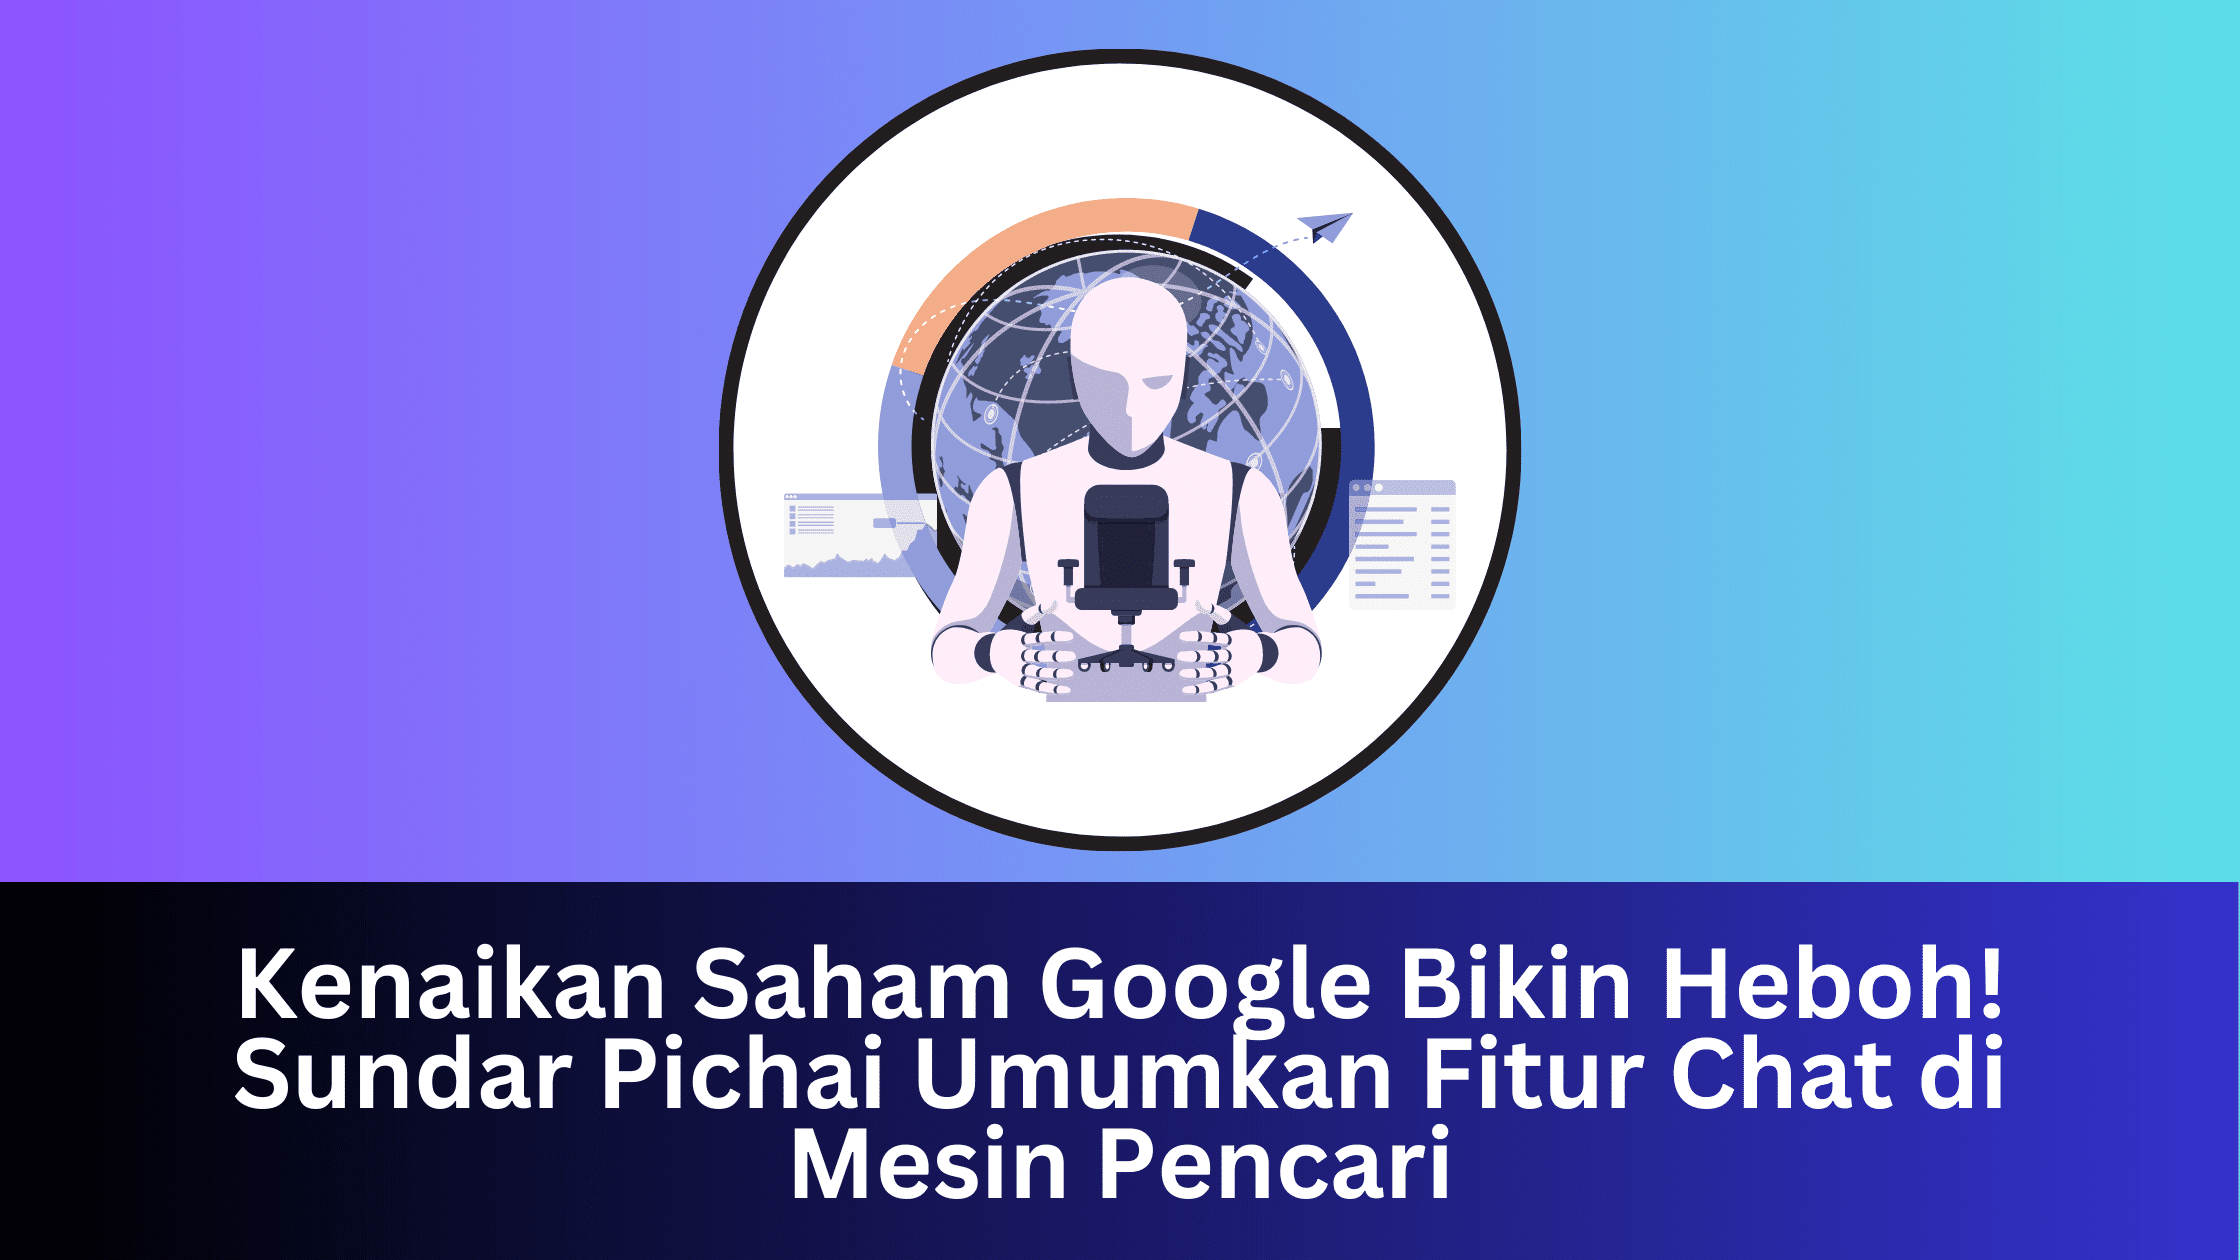 Kenaikan Saham Google Bikin Heboh! Sundar Pichai Umumkan Fitur Chat di Mesin Pencari